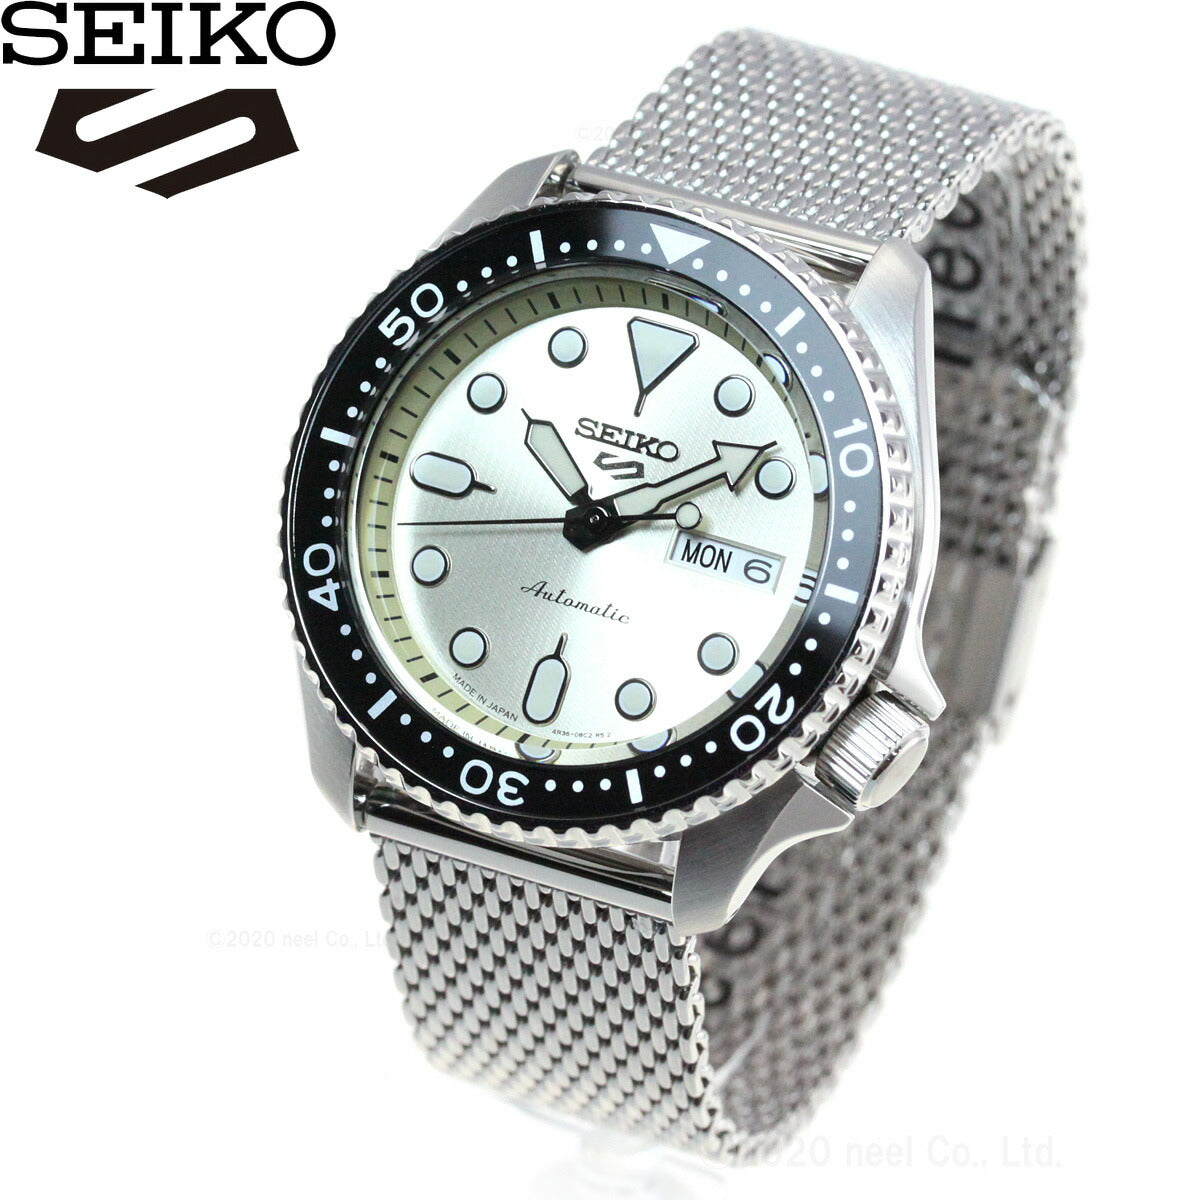 セイコー5 スポーツ SEIKO 5 SPORTS 自動巻き メカニカル 腕時計 メンズ セイコーファイブ スーツ Suits SBSA067